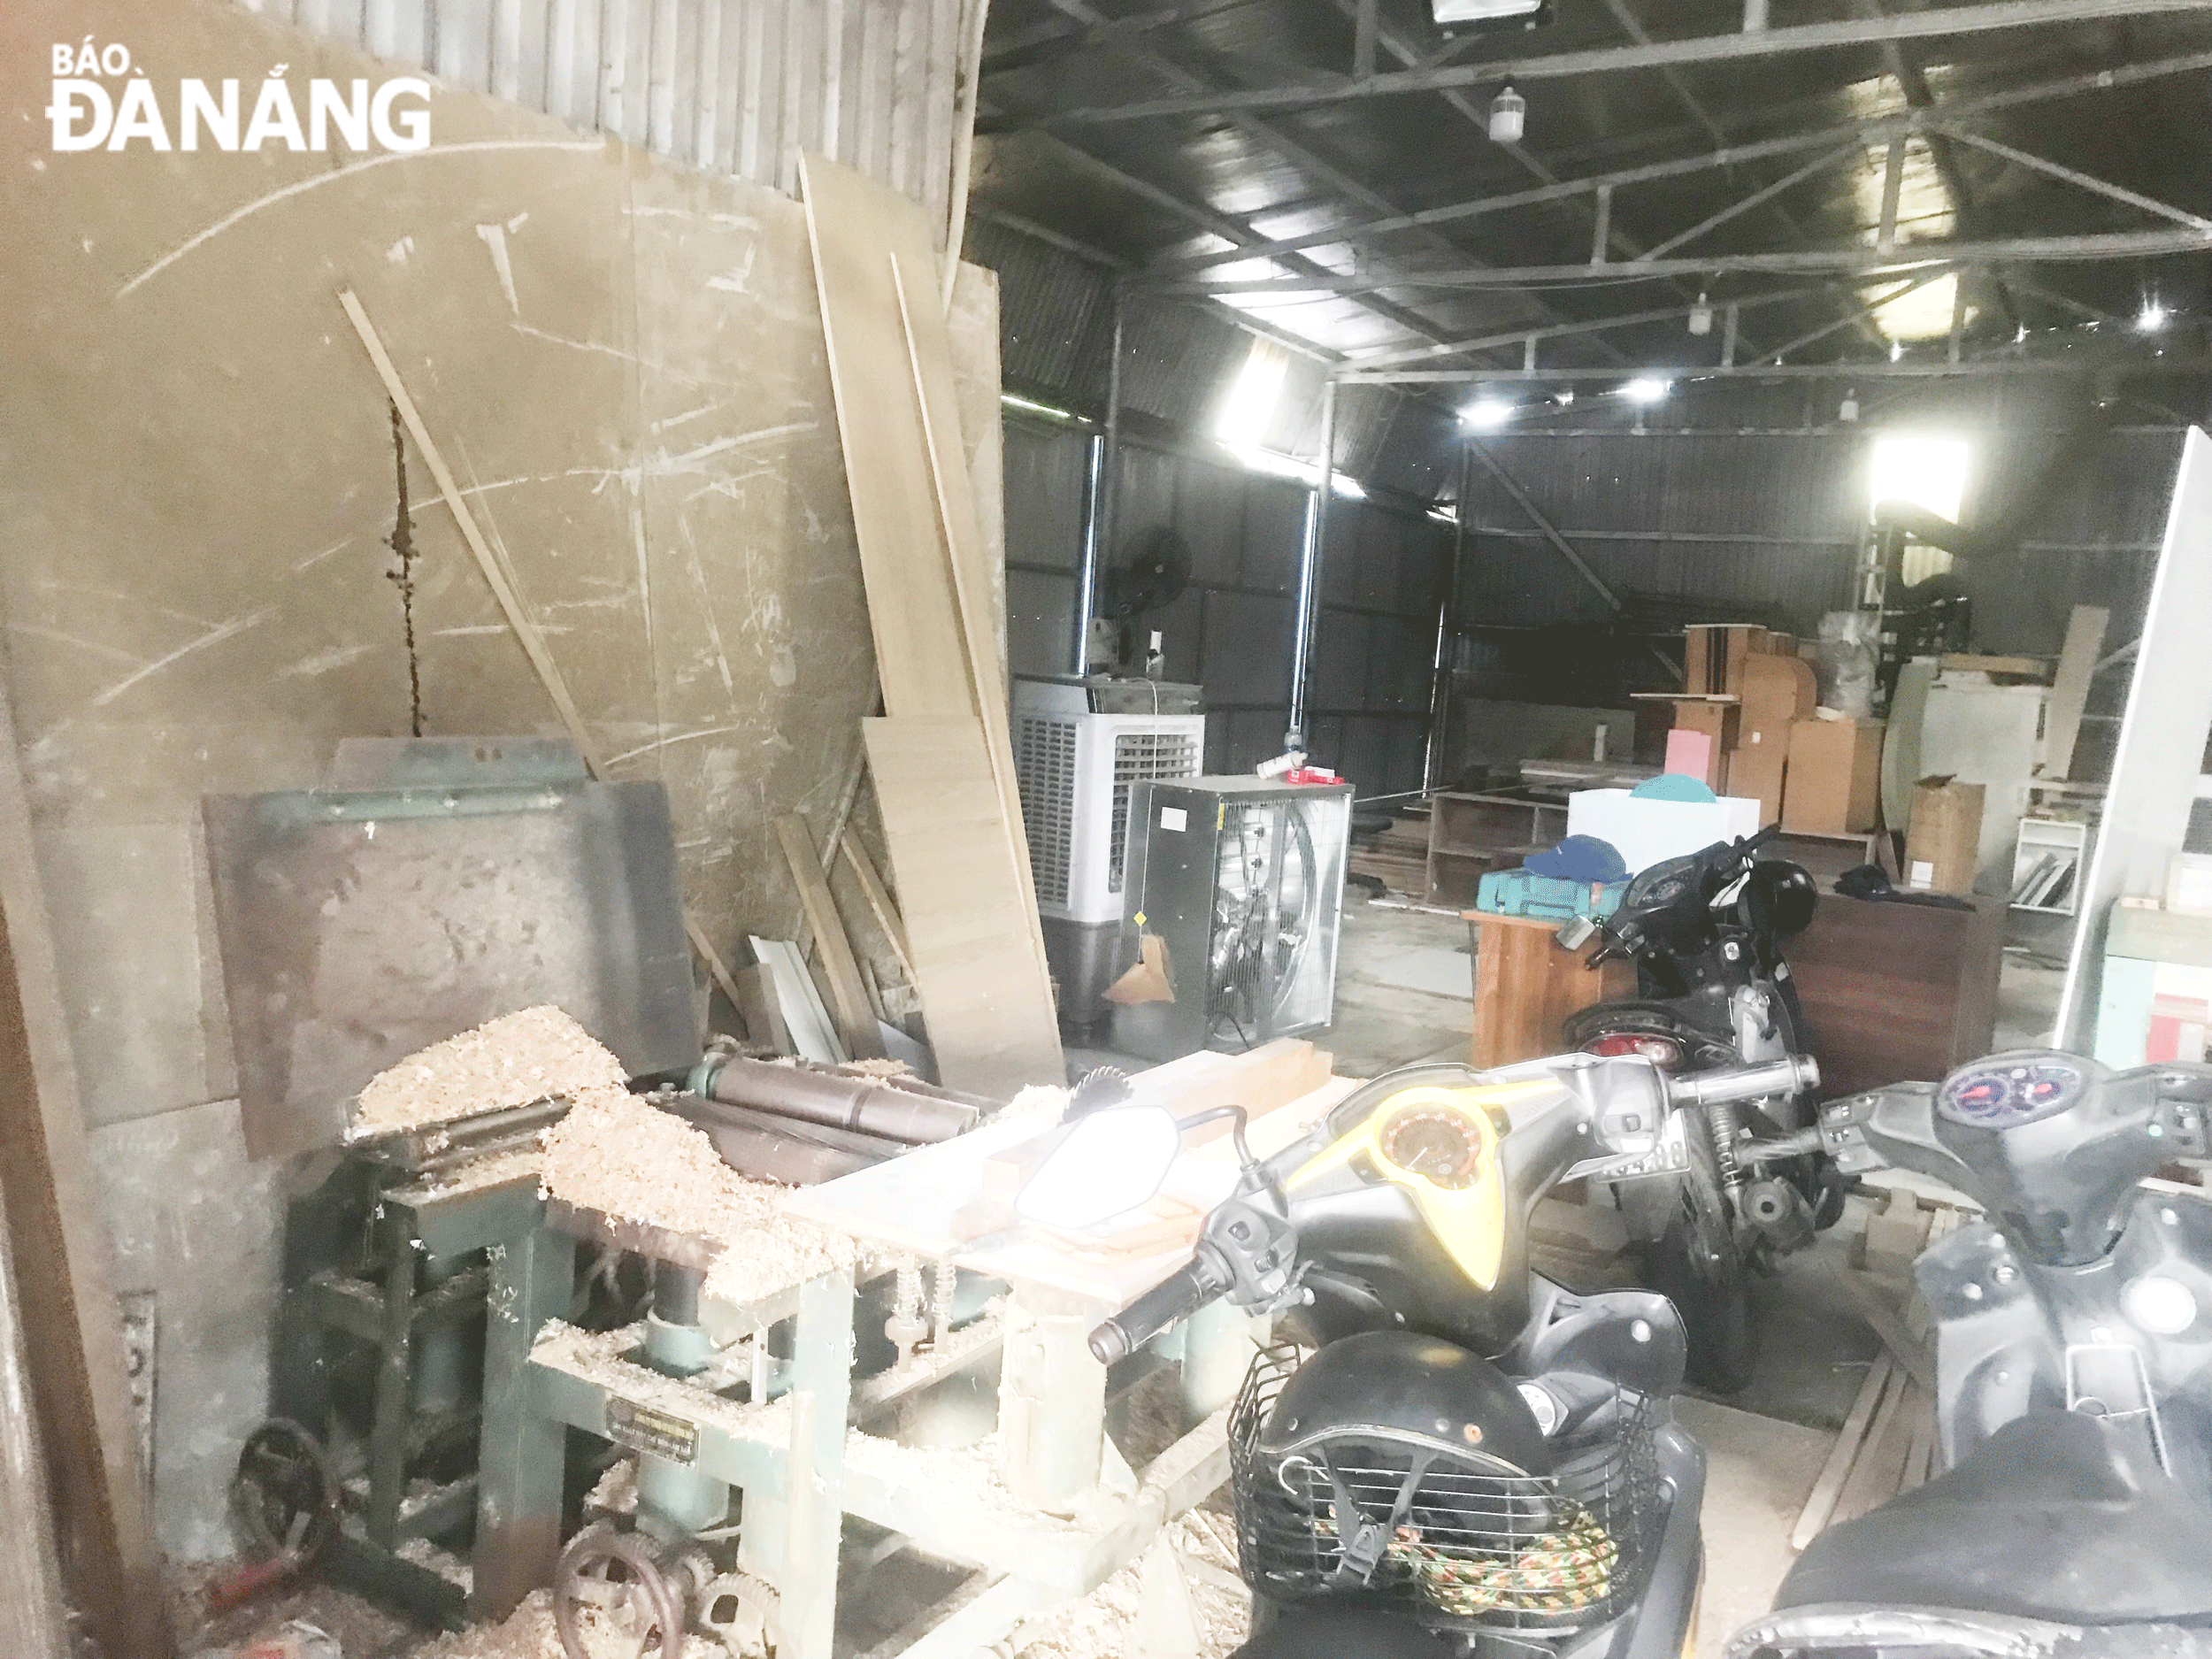 Xưởng gỗ tại lô đất 27, đường Nguyễn Sắc Kim, phường Hòa Xuân trong quá trình hoạt động xịt sơn PU gây ô nhiễm môi trường.  Ảnh: KHÁNH HUYỀN	